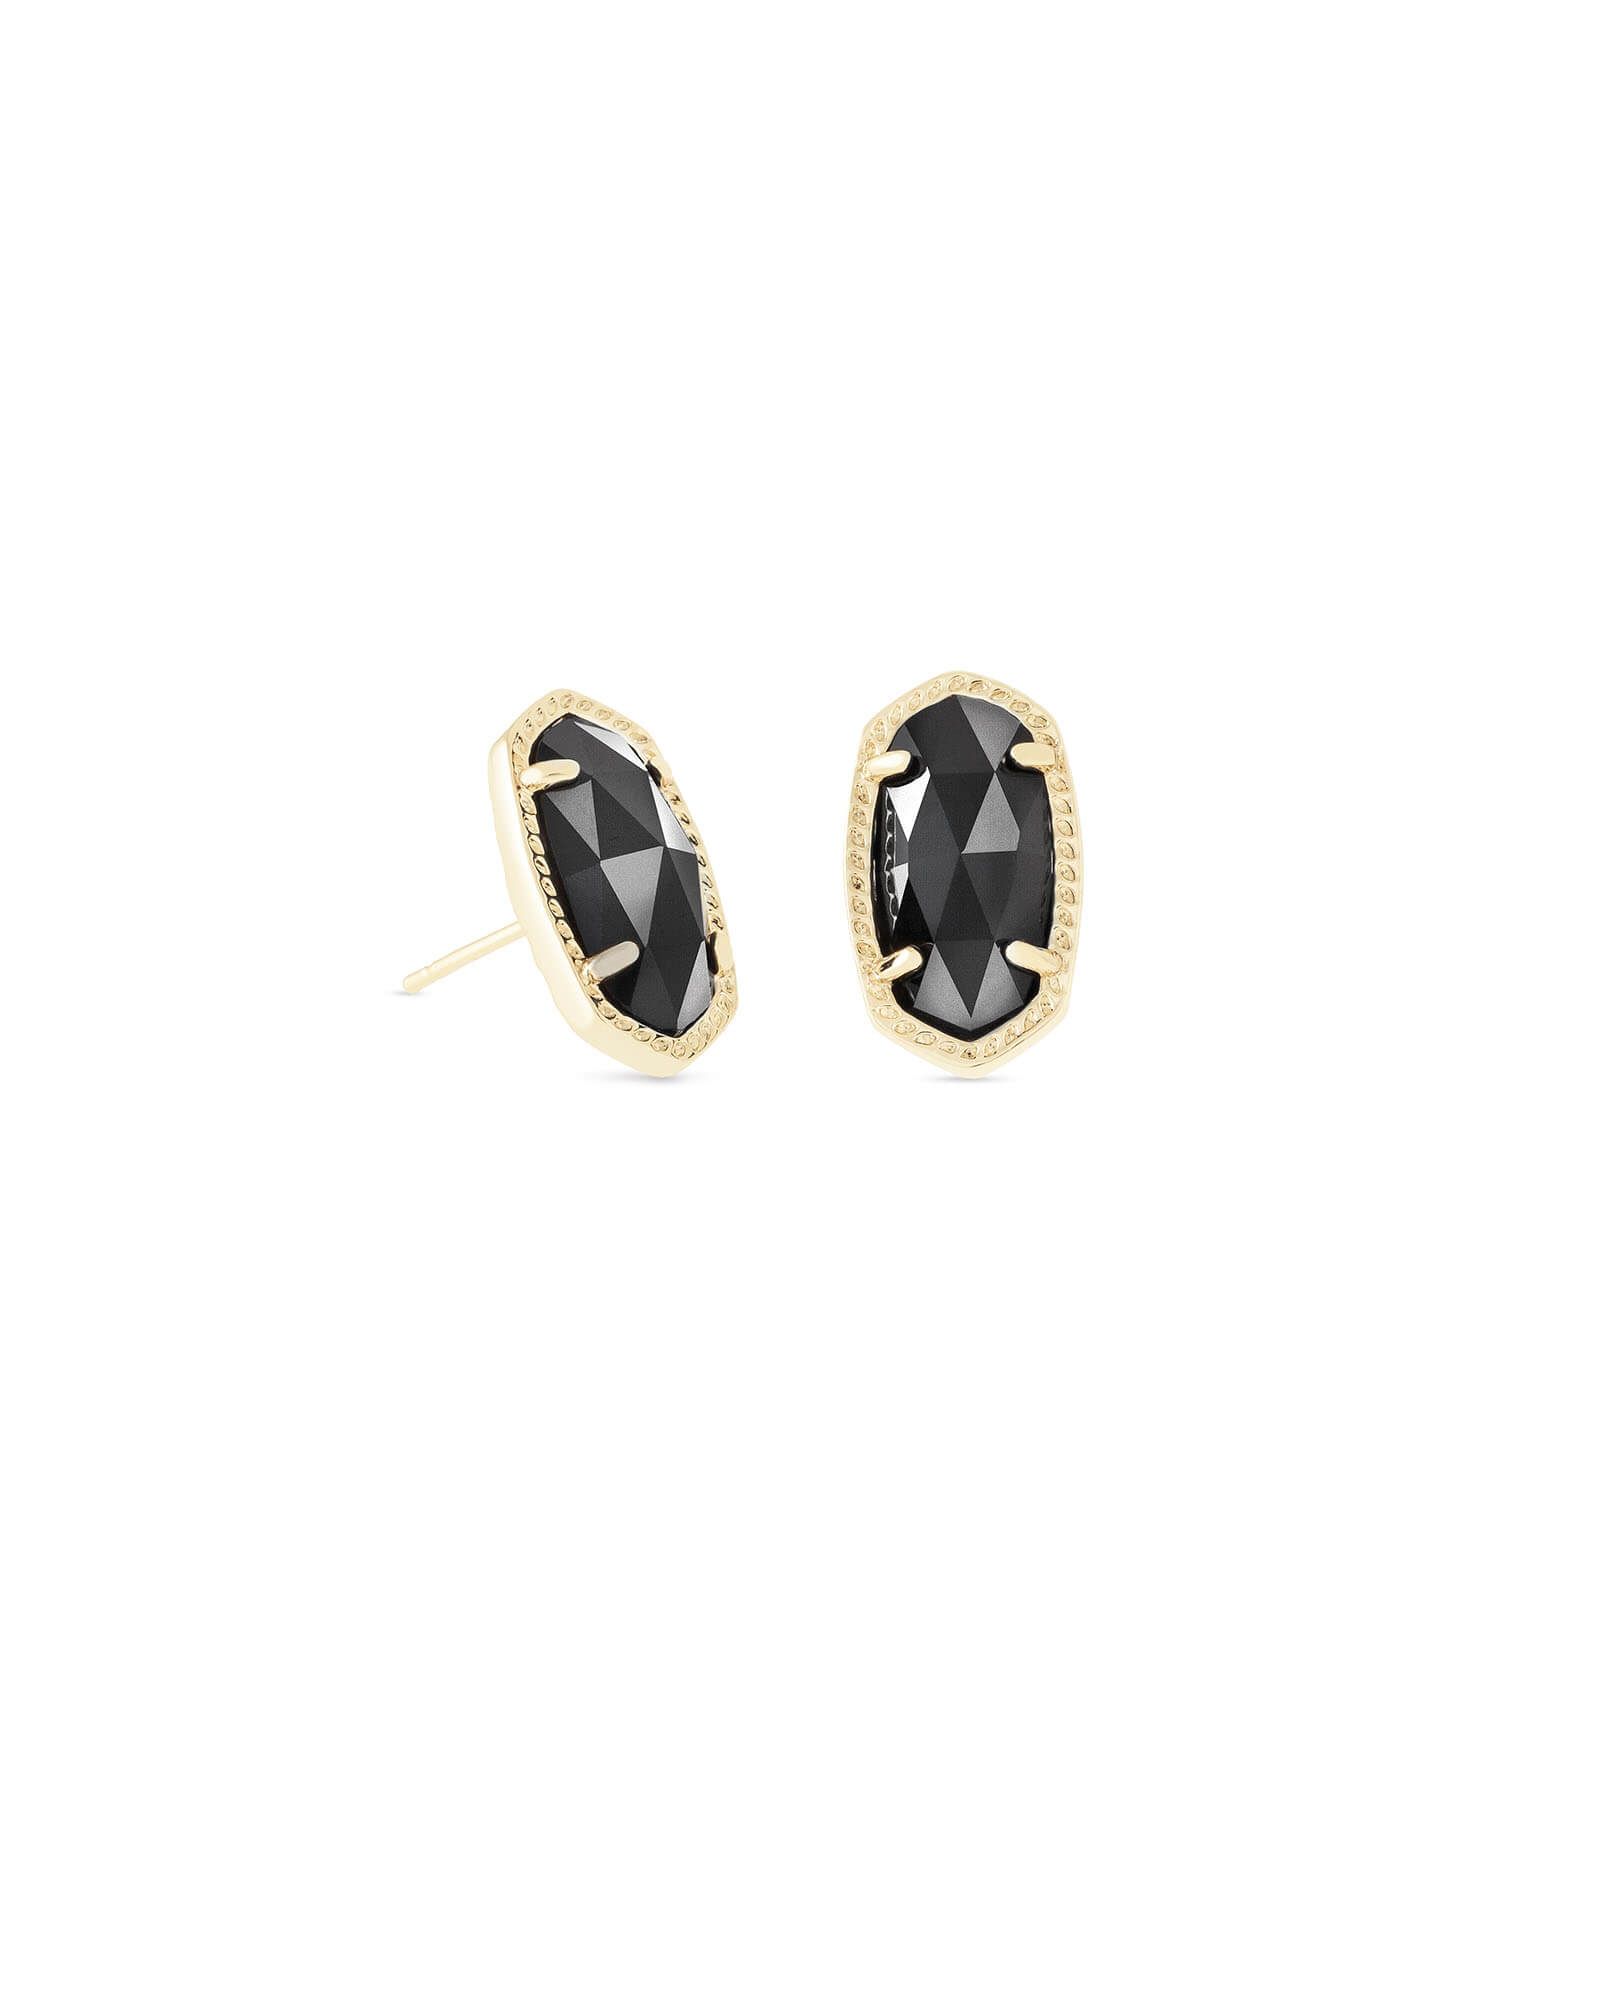 Ellie Gold Stud Earrings in Black | Kendra Scott Jewelry | Kendra Scott